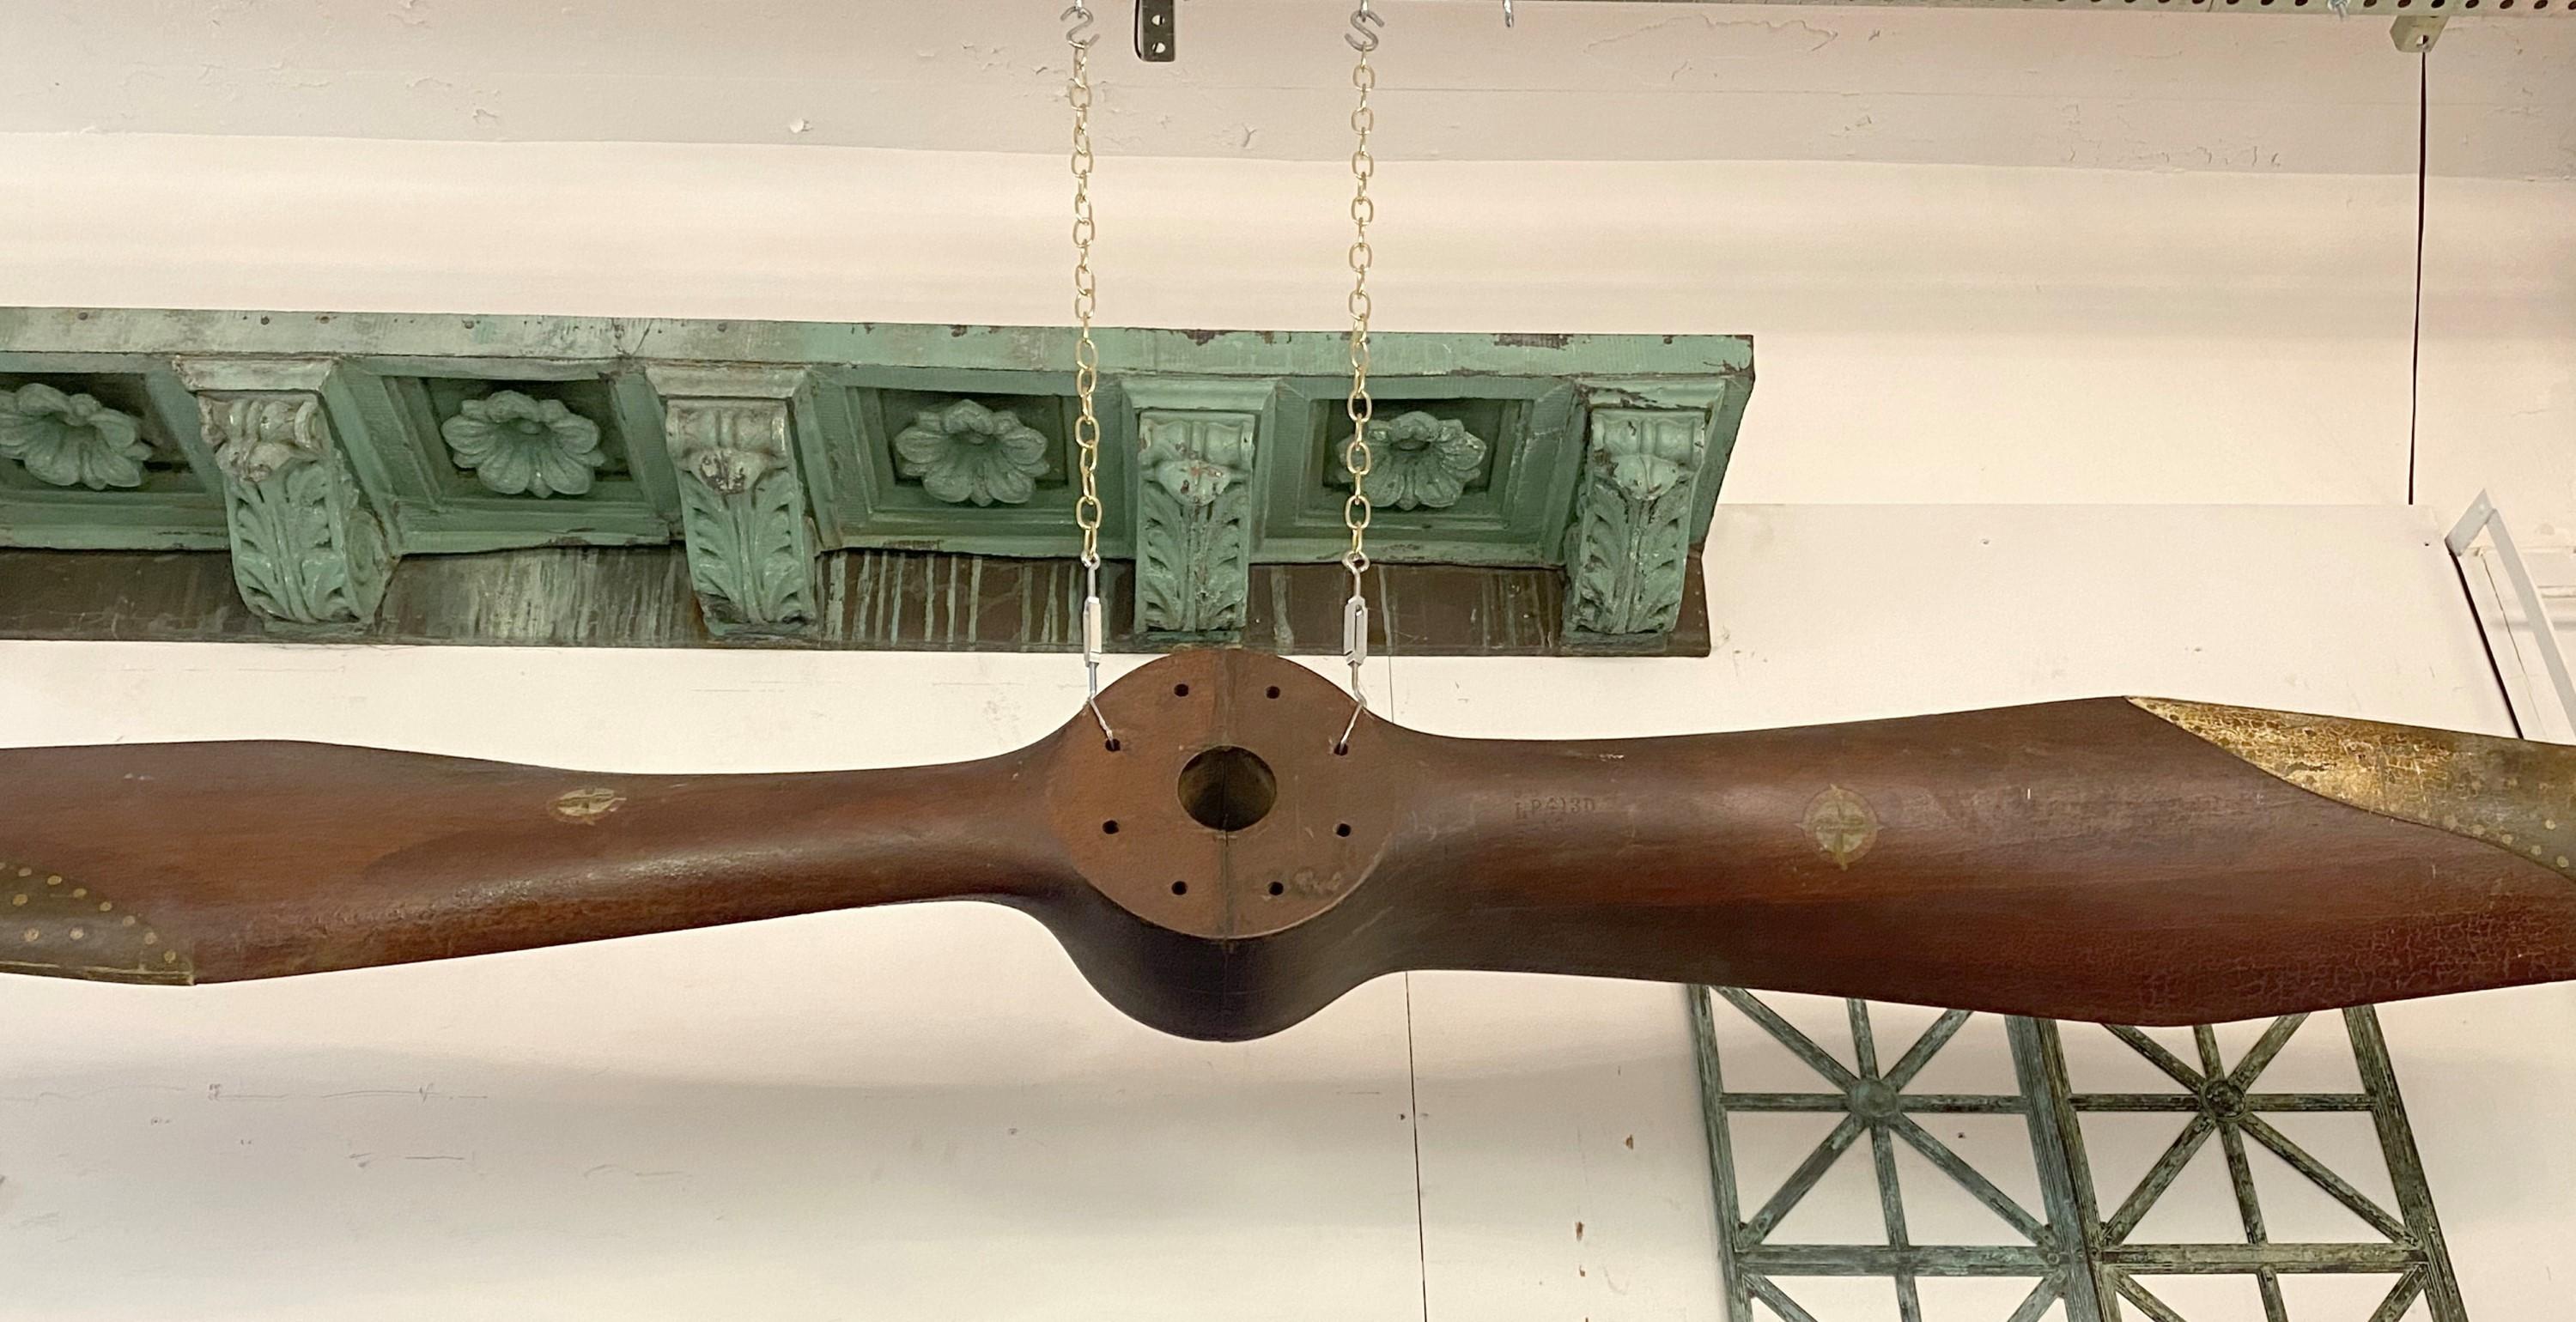 Authentique et rare hélice en bois sculptée à la main de 1917, datant de la première guerre mondiale, avec embouts en laiton. Fabriqué par Matthew Bros MFG. Co. à Milwaukee, WI. Ces hélices étaient souvent utilisées sur les bateaux volants H16 de la